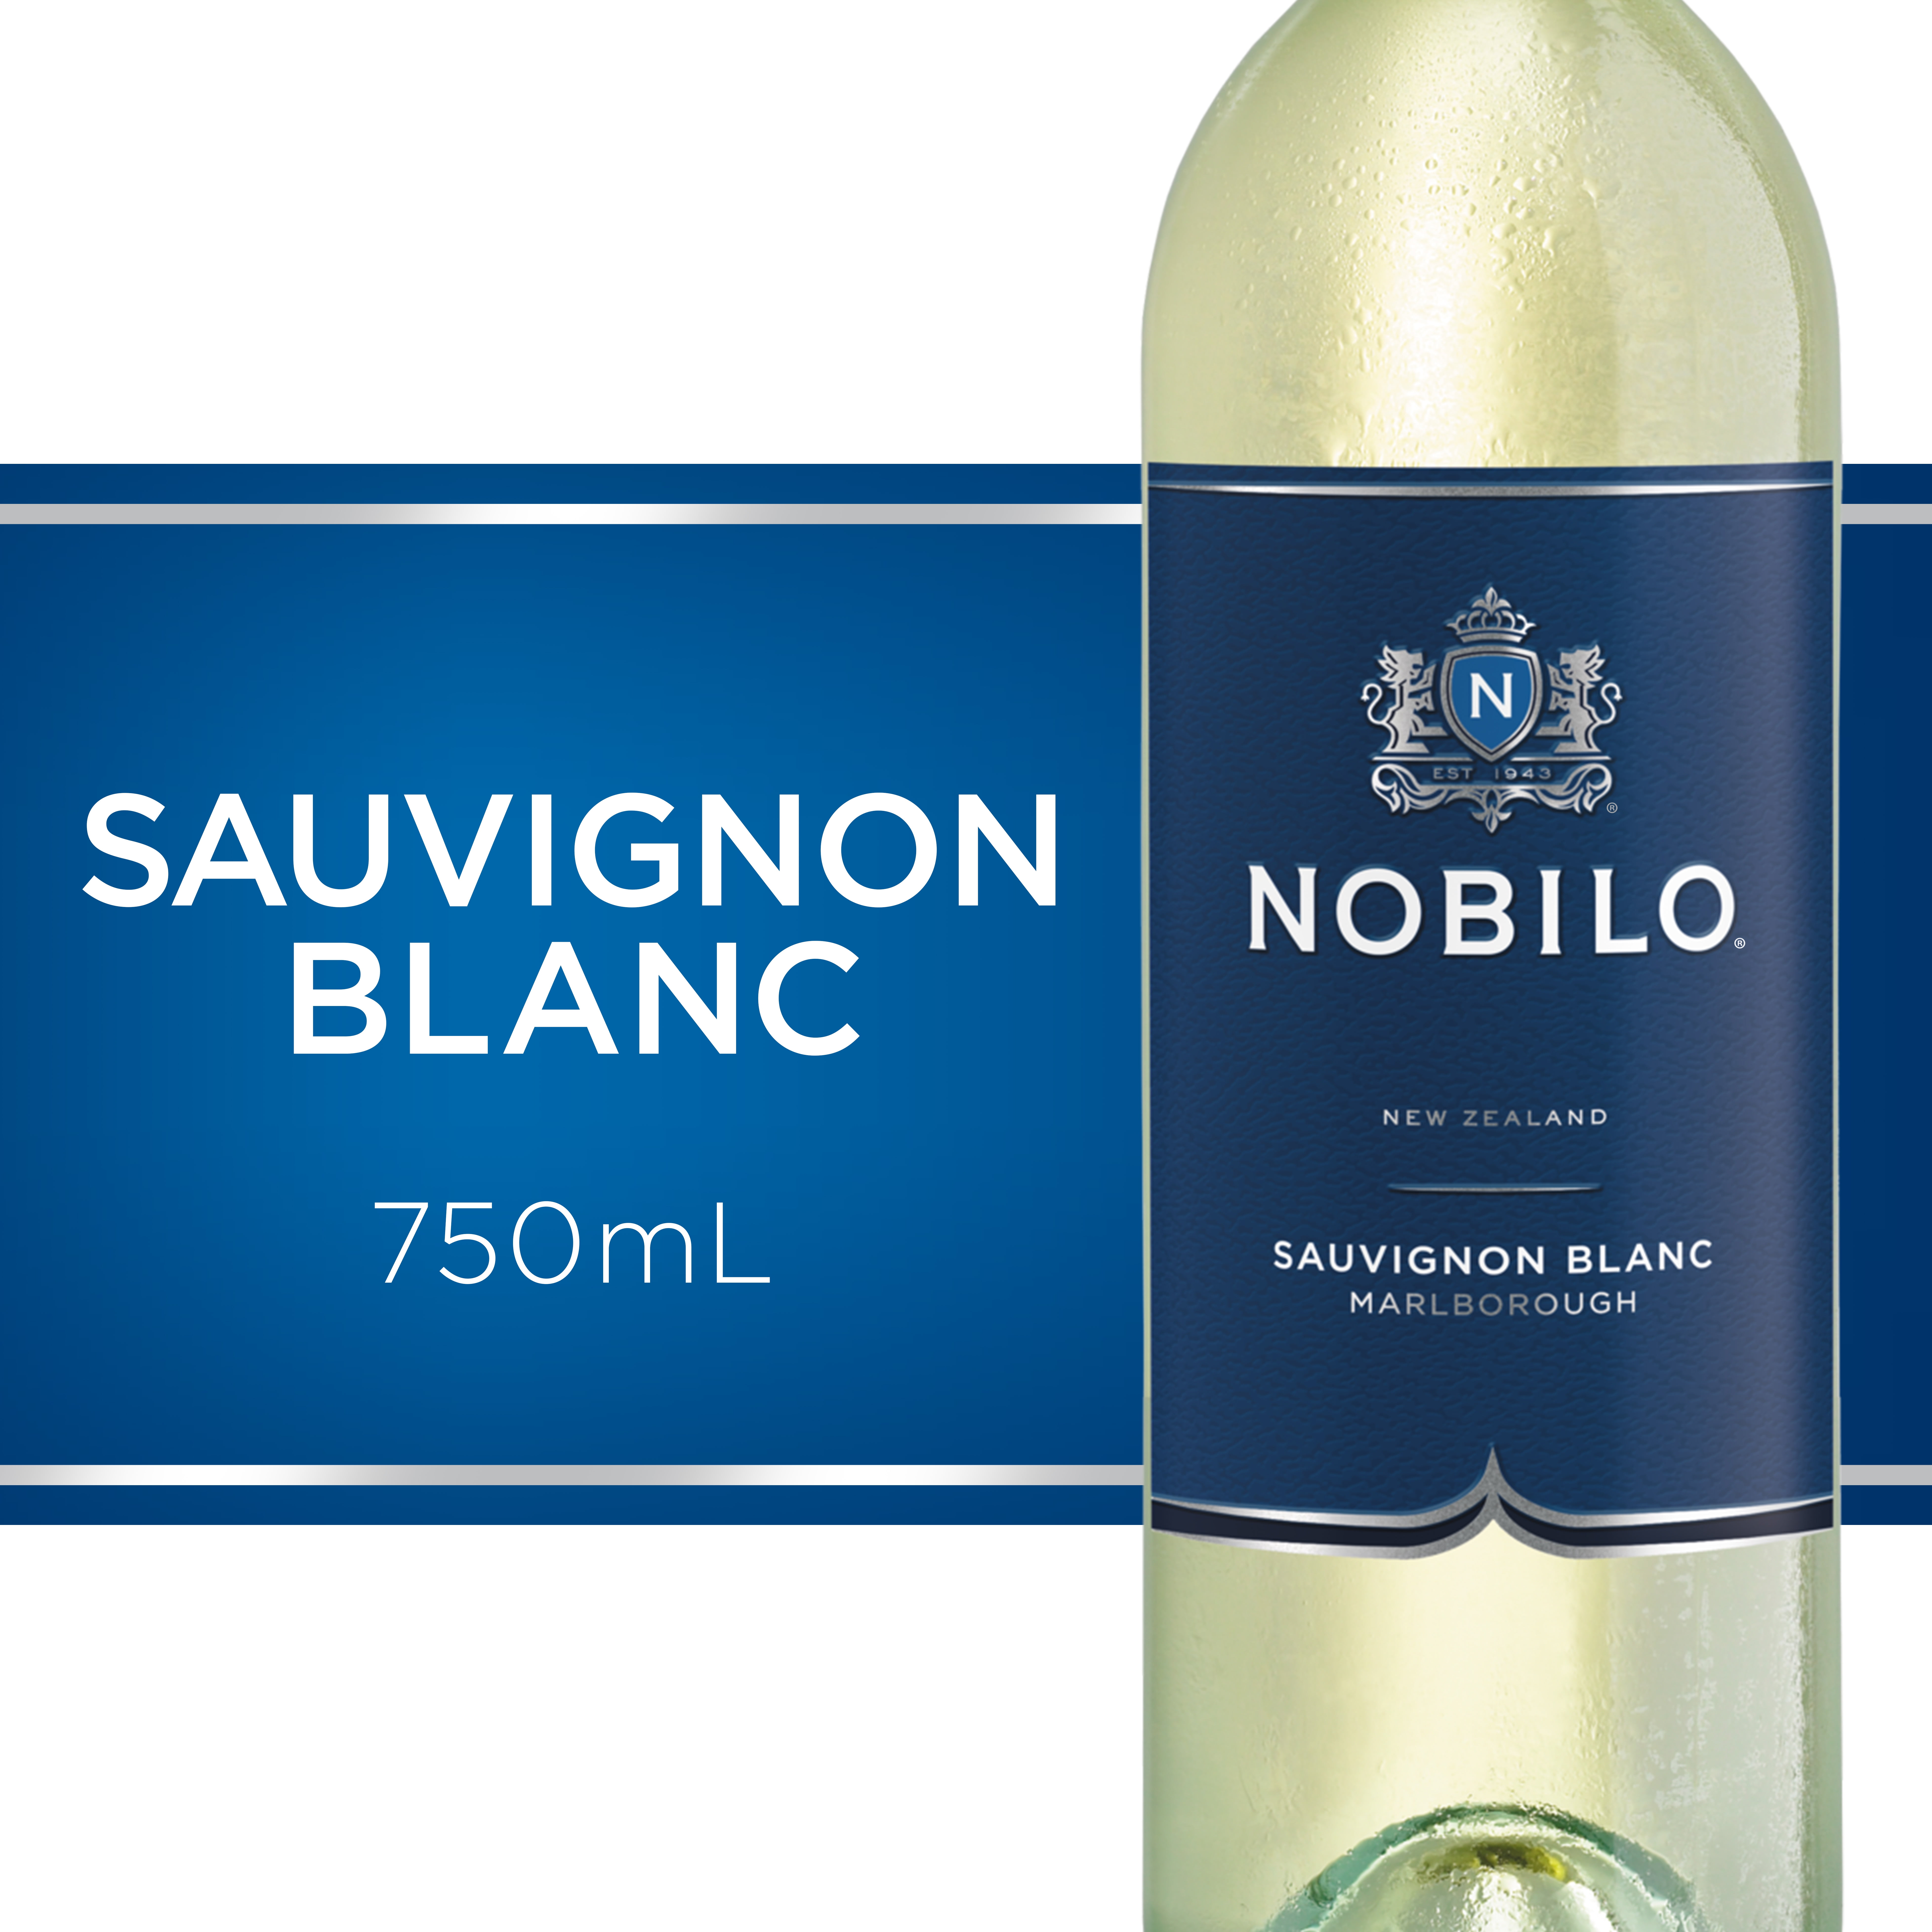 New Zealand Vs. California Sauvignon Blanc. : r/wine